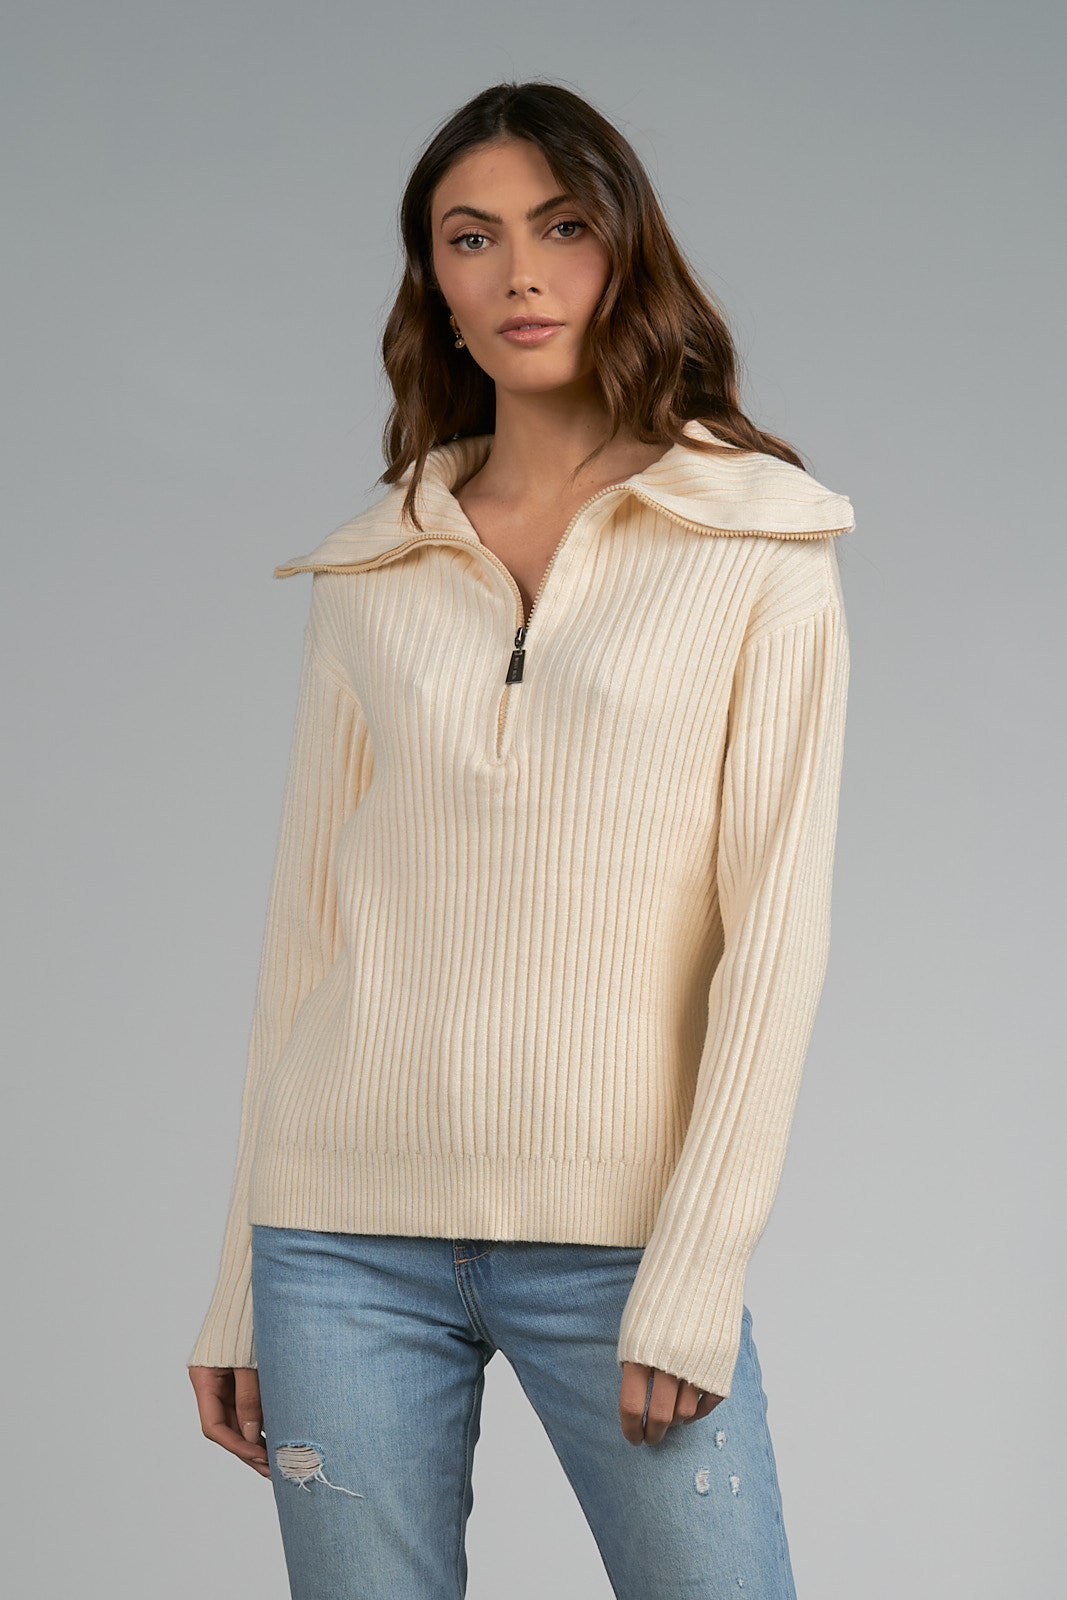 Willow Sweater - Shop Elan